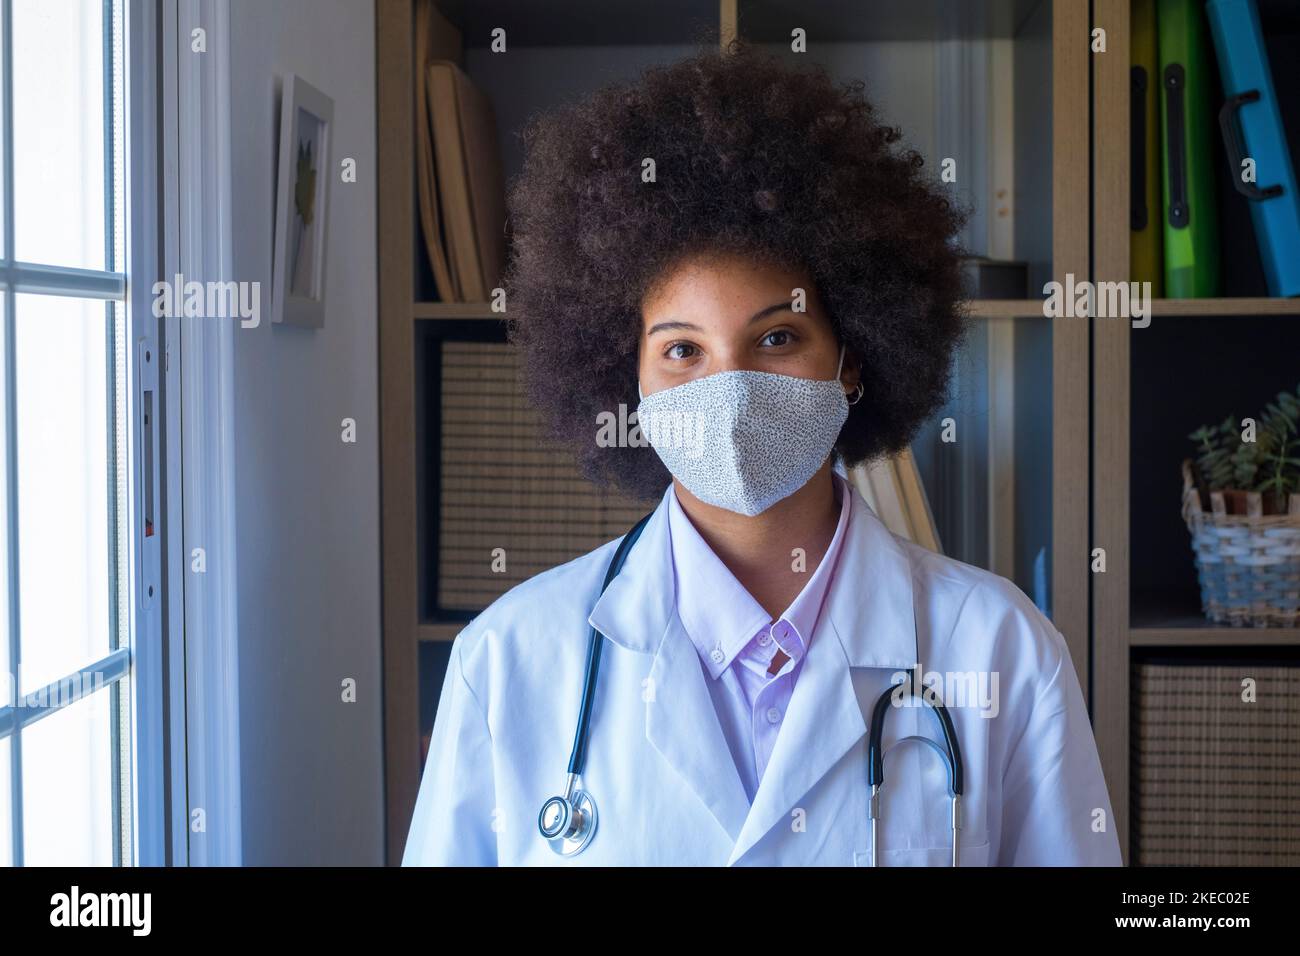 Femme travailleuse de la santé en couverture médicale faciale pour se protéger contre l'épidémie de coronavirus. Portrait d'une femme médecin afro-américaine professionnelle portant un masque médical de protection et uniforme regardant l'appareil photo Banque D'Images